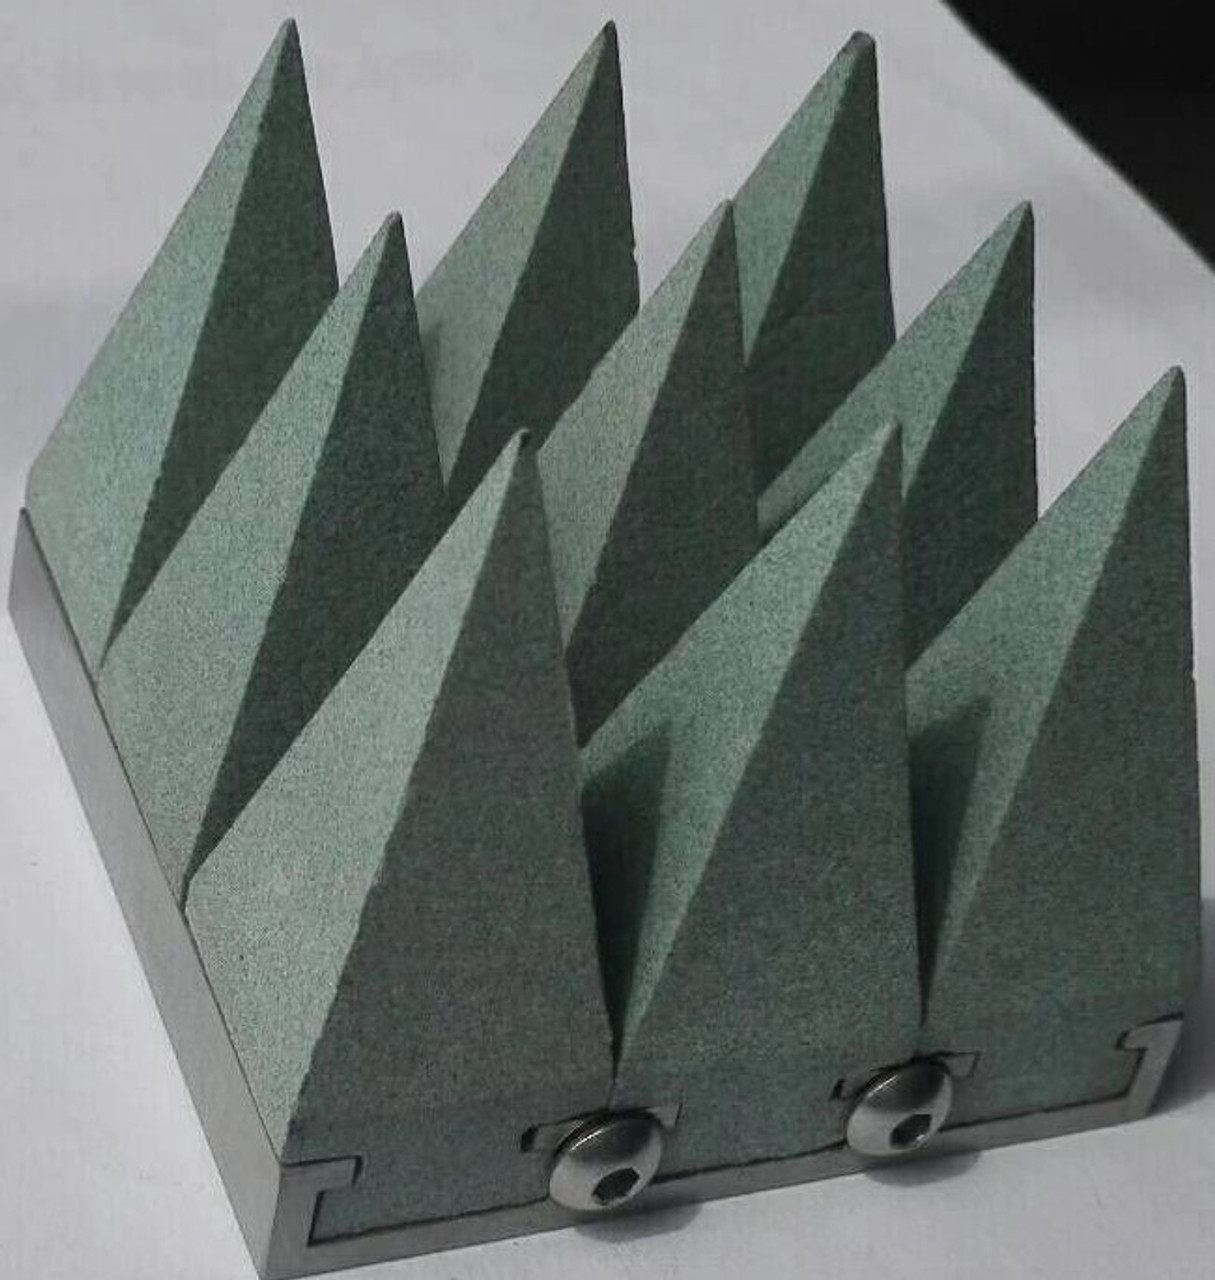 SiC-RAM Silicone Carbide Pyramidal RF Absorber Foam